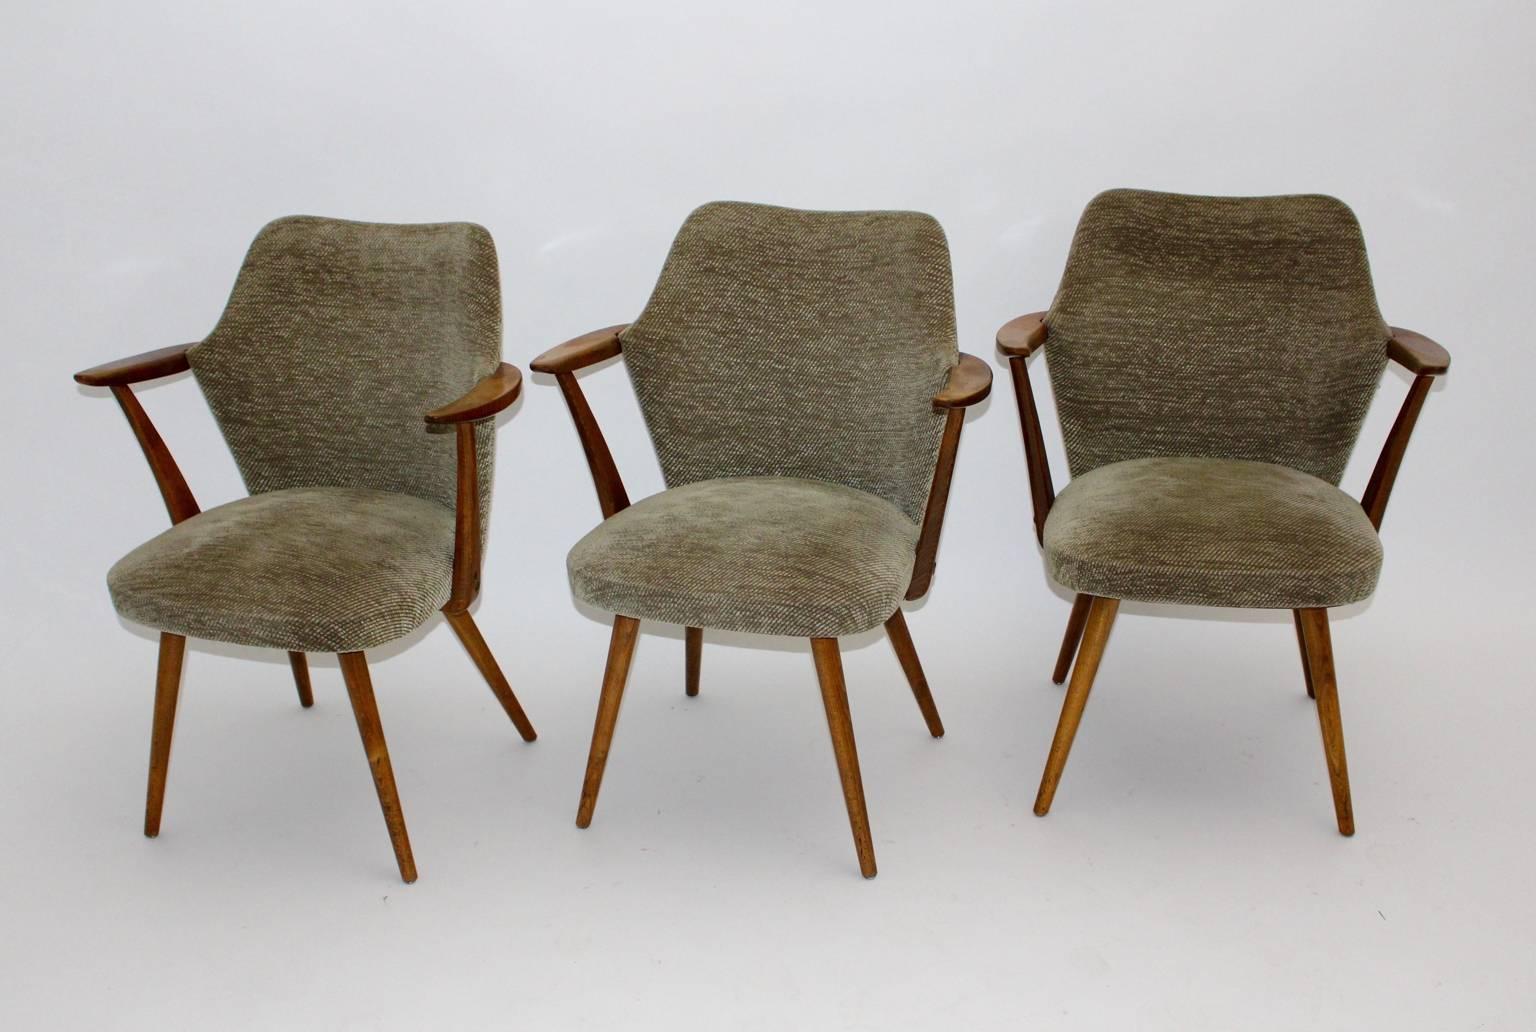 Mid century modern vintage armchairs or club chairs from beech designed by Oswald Haerdtl attributed Vienna 1950s.
Das Gestell des Sessels ist aus Buchenholz, während die Originalpolsterung mit einem hellbraunen Wollstoff bezogen ist. 
Das gleiche